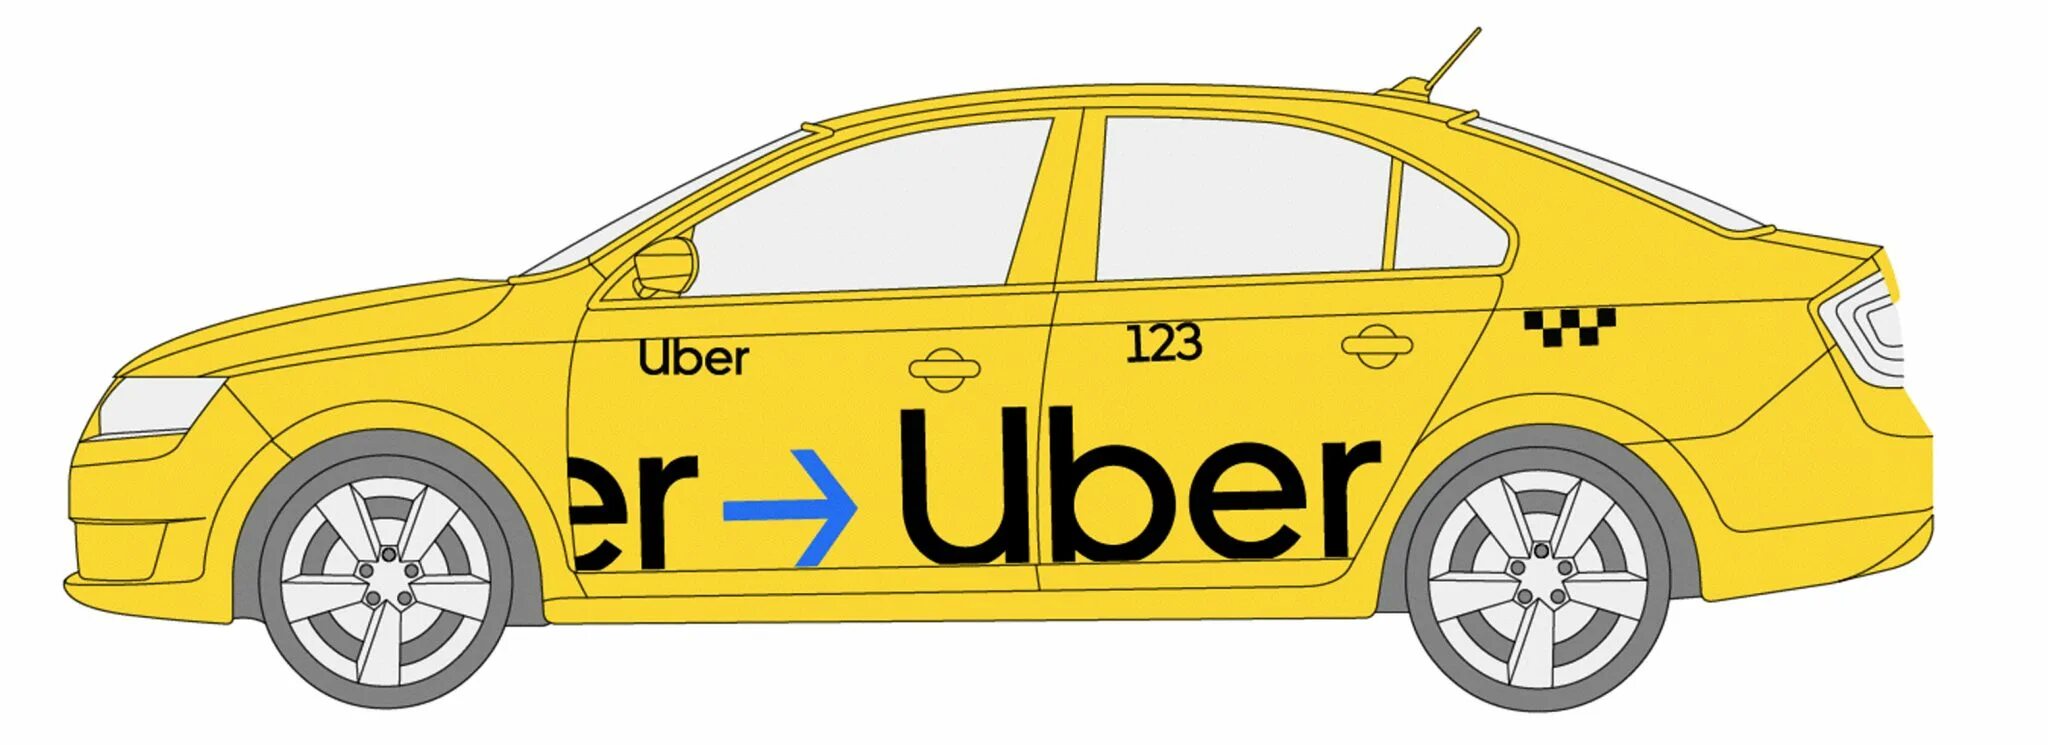 Эмблема такси. Юбер такси заказать